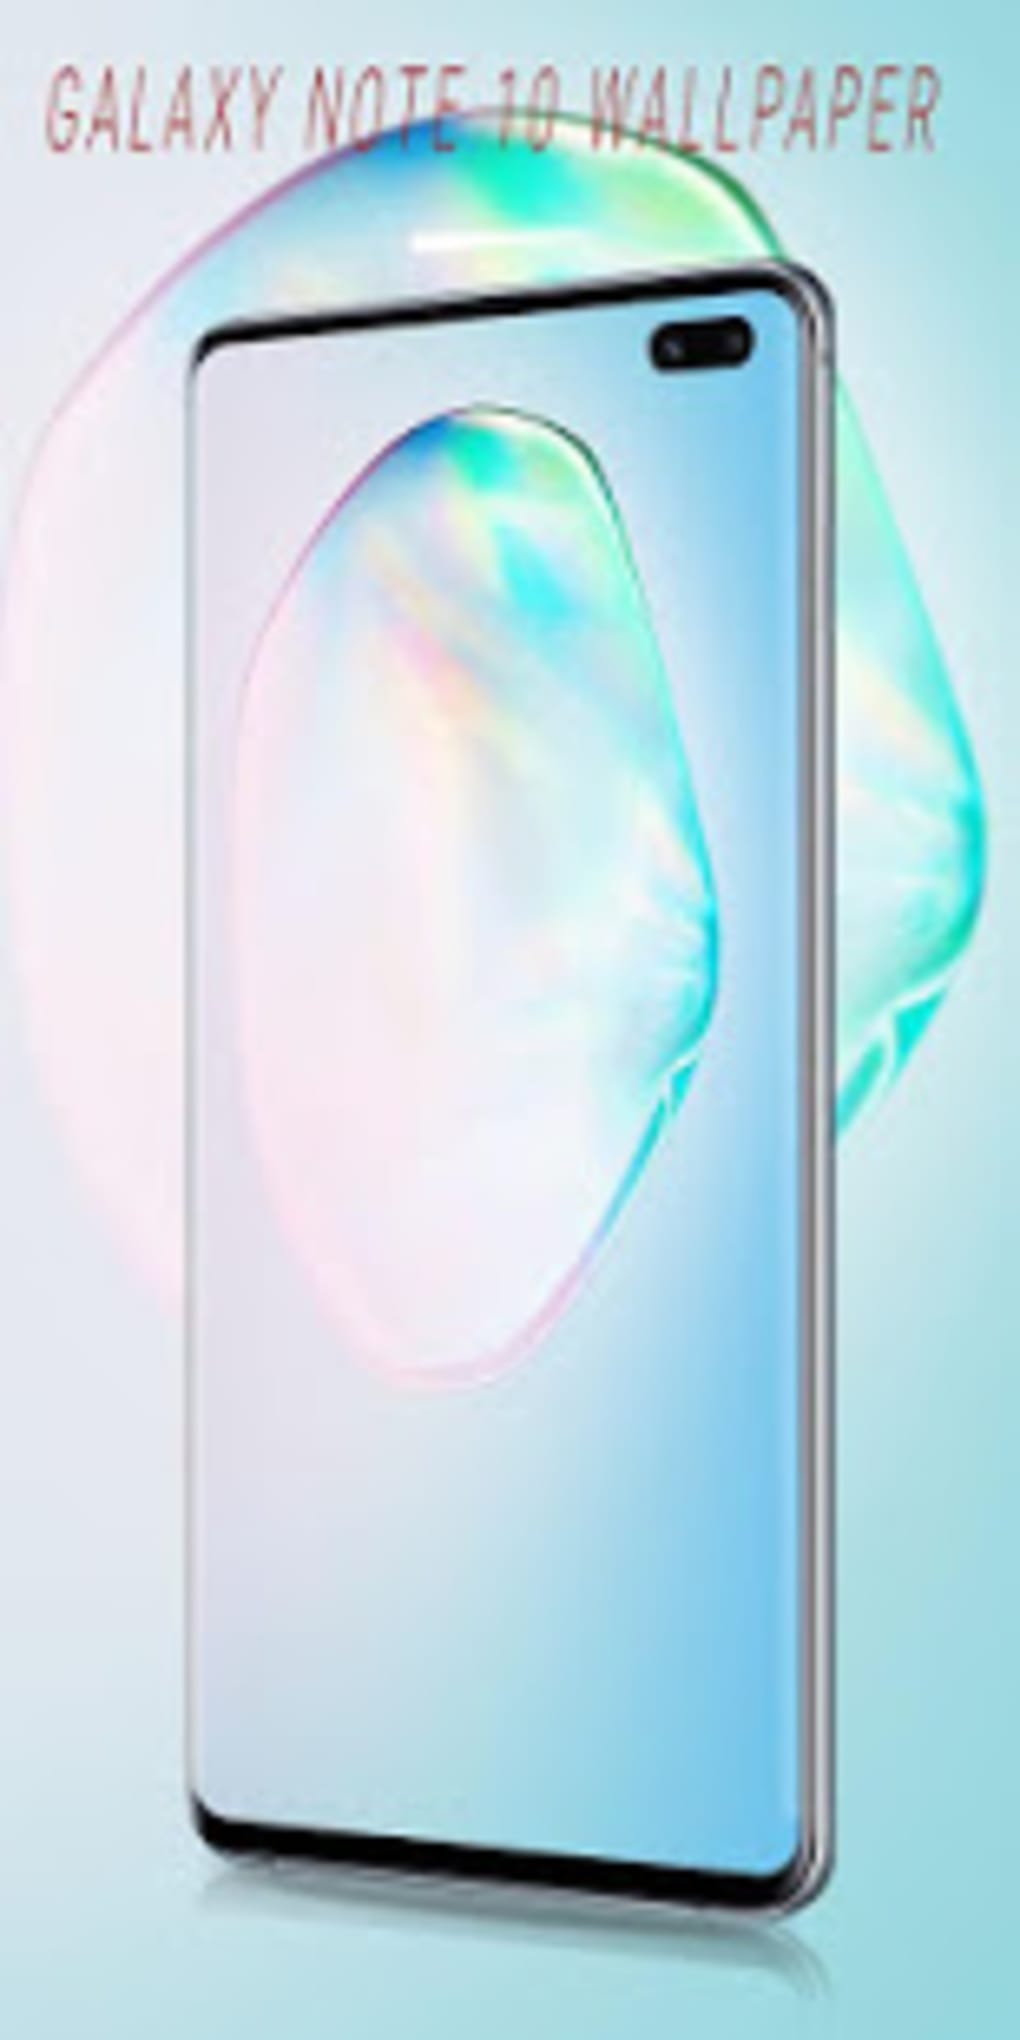 Samsung Galaxy Note10 Wallpapers  Top Những Hình Ảnh Đẹp